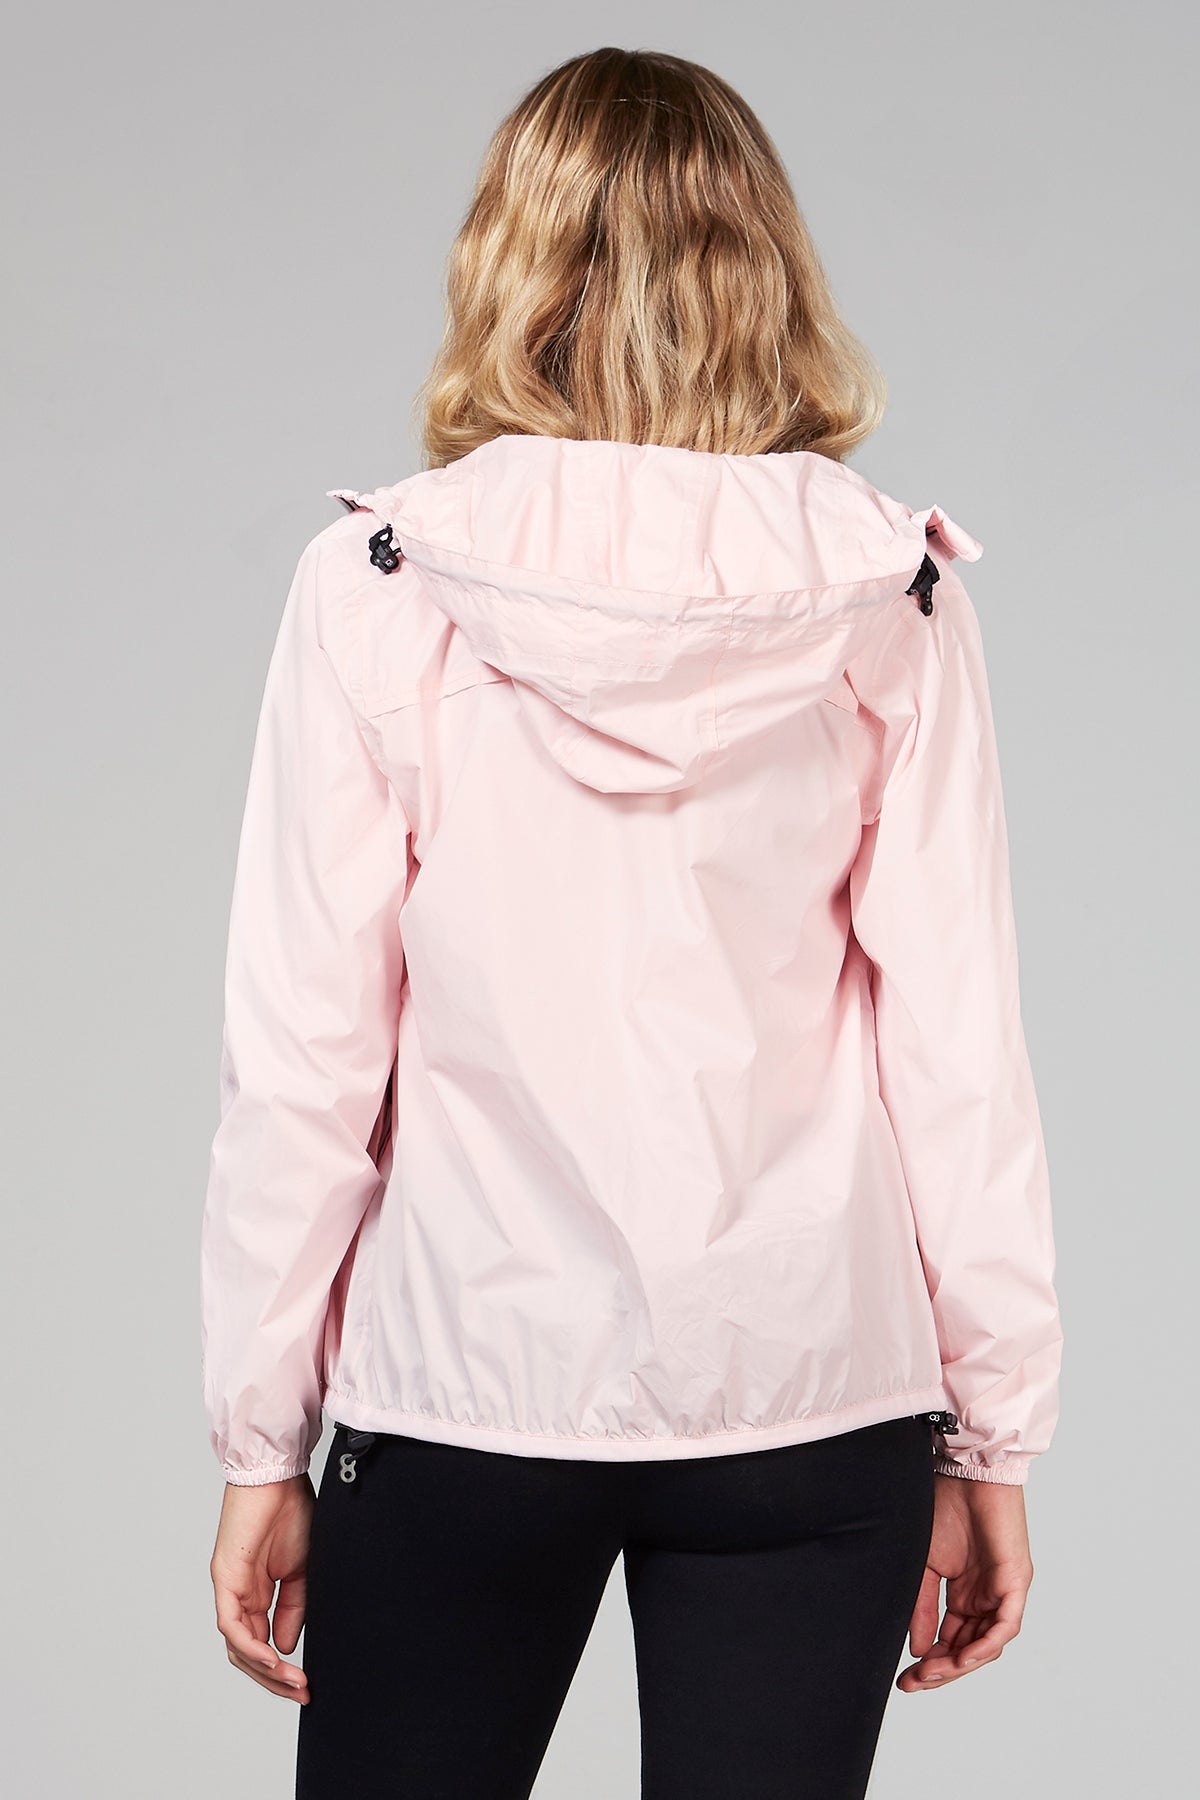 Sloane - Ballet Slipper Full Zip Packable Rain Jacket - O8lifestyle.